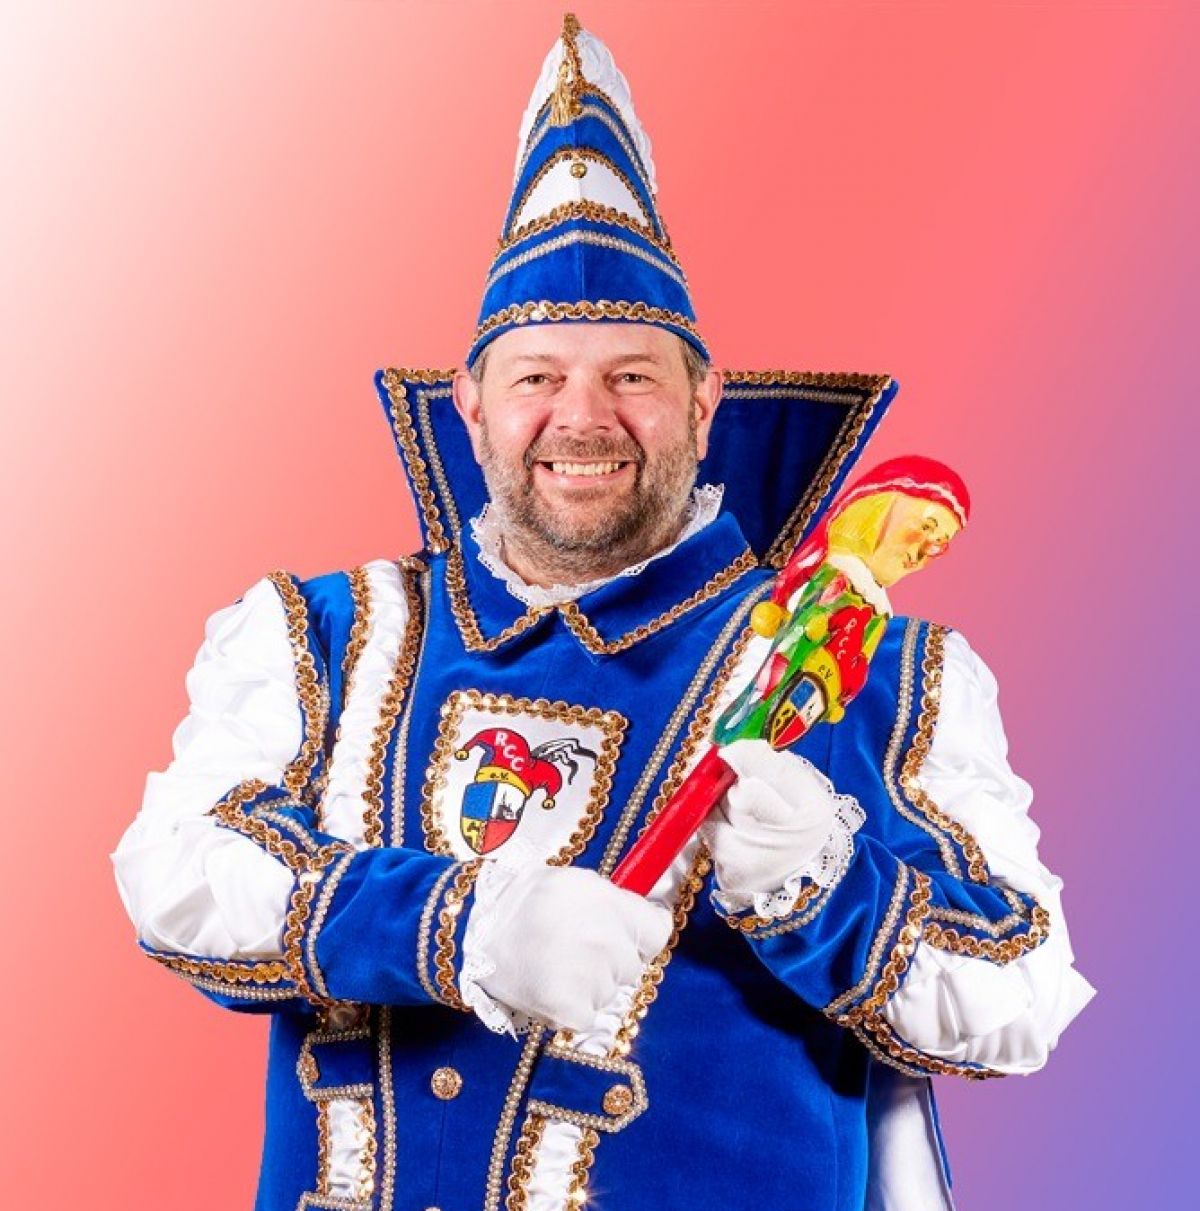 Gemeinsam mit Prinz Steffen I. (Bild) und gut gelaunten Karnevalisten möchte der Rhoder Carnevals Club ein Prinzen-Warm-Up zum Auftakt des Jubiläumsjahres feiern. von privat